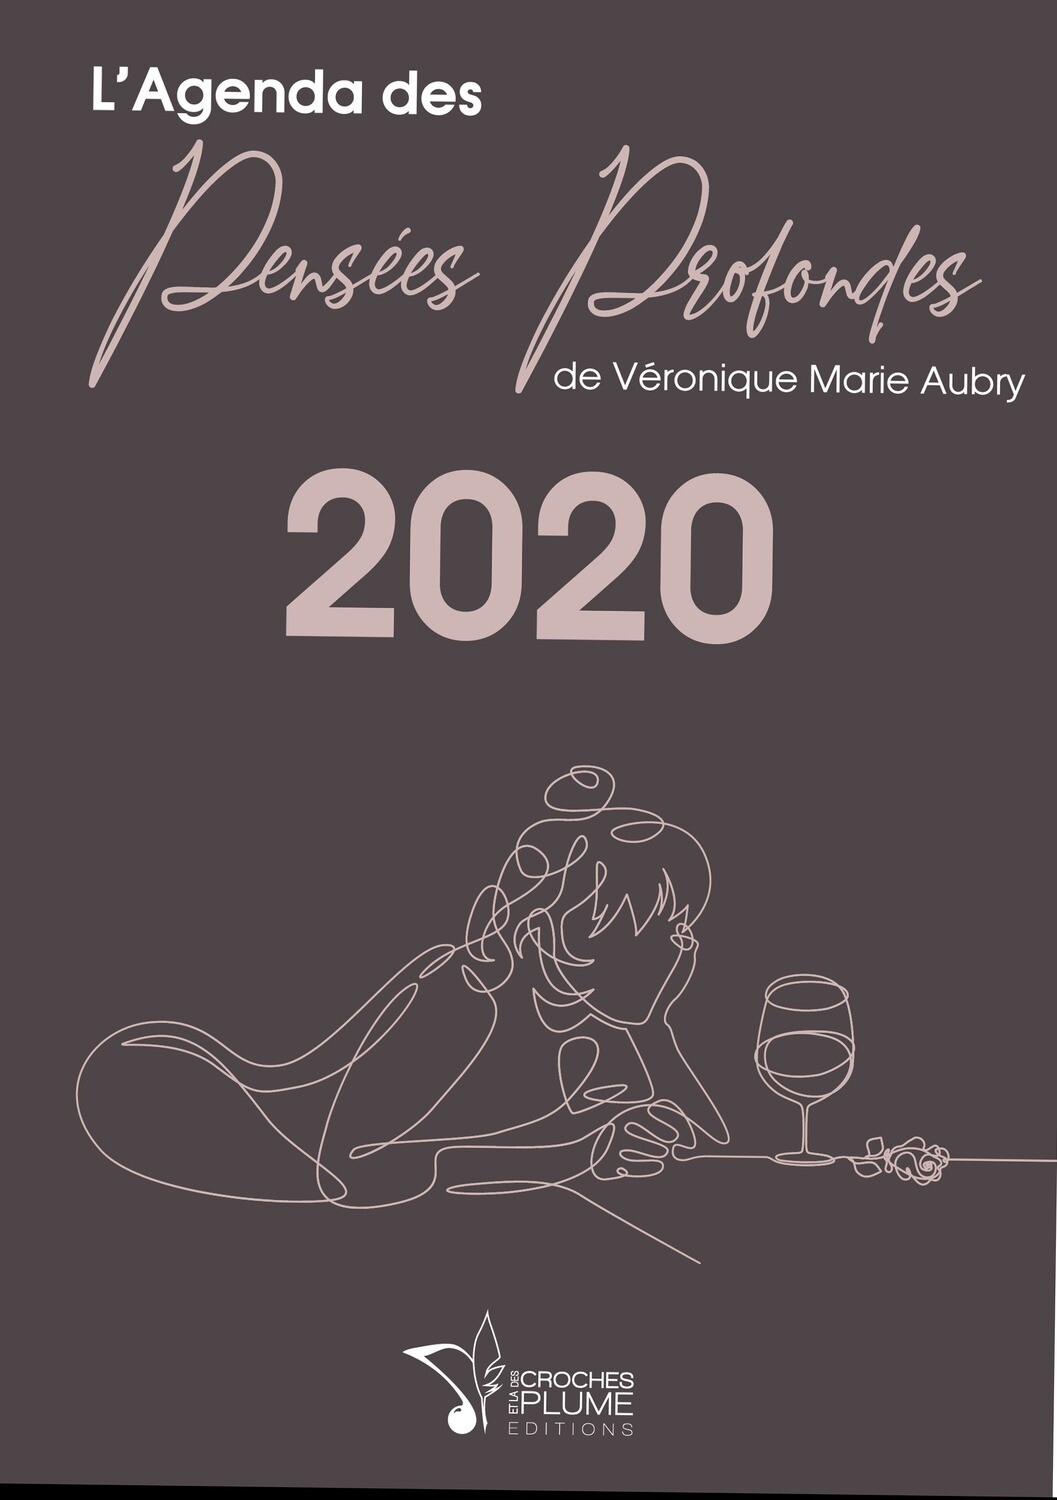 L'AGENDA DES PENSÉES PROFONDES 2020